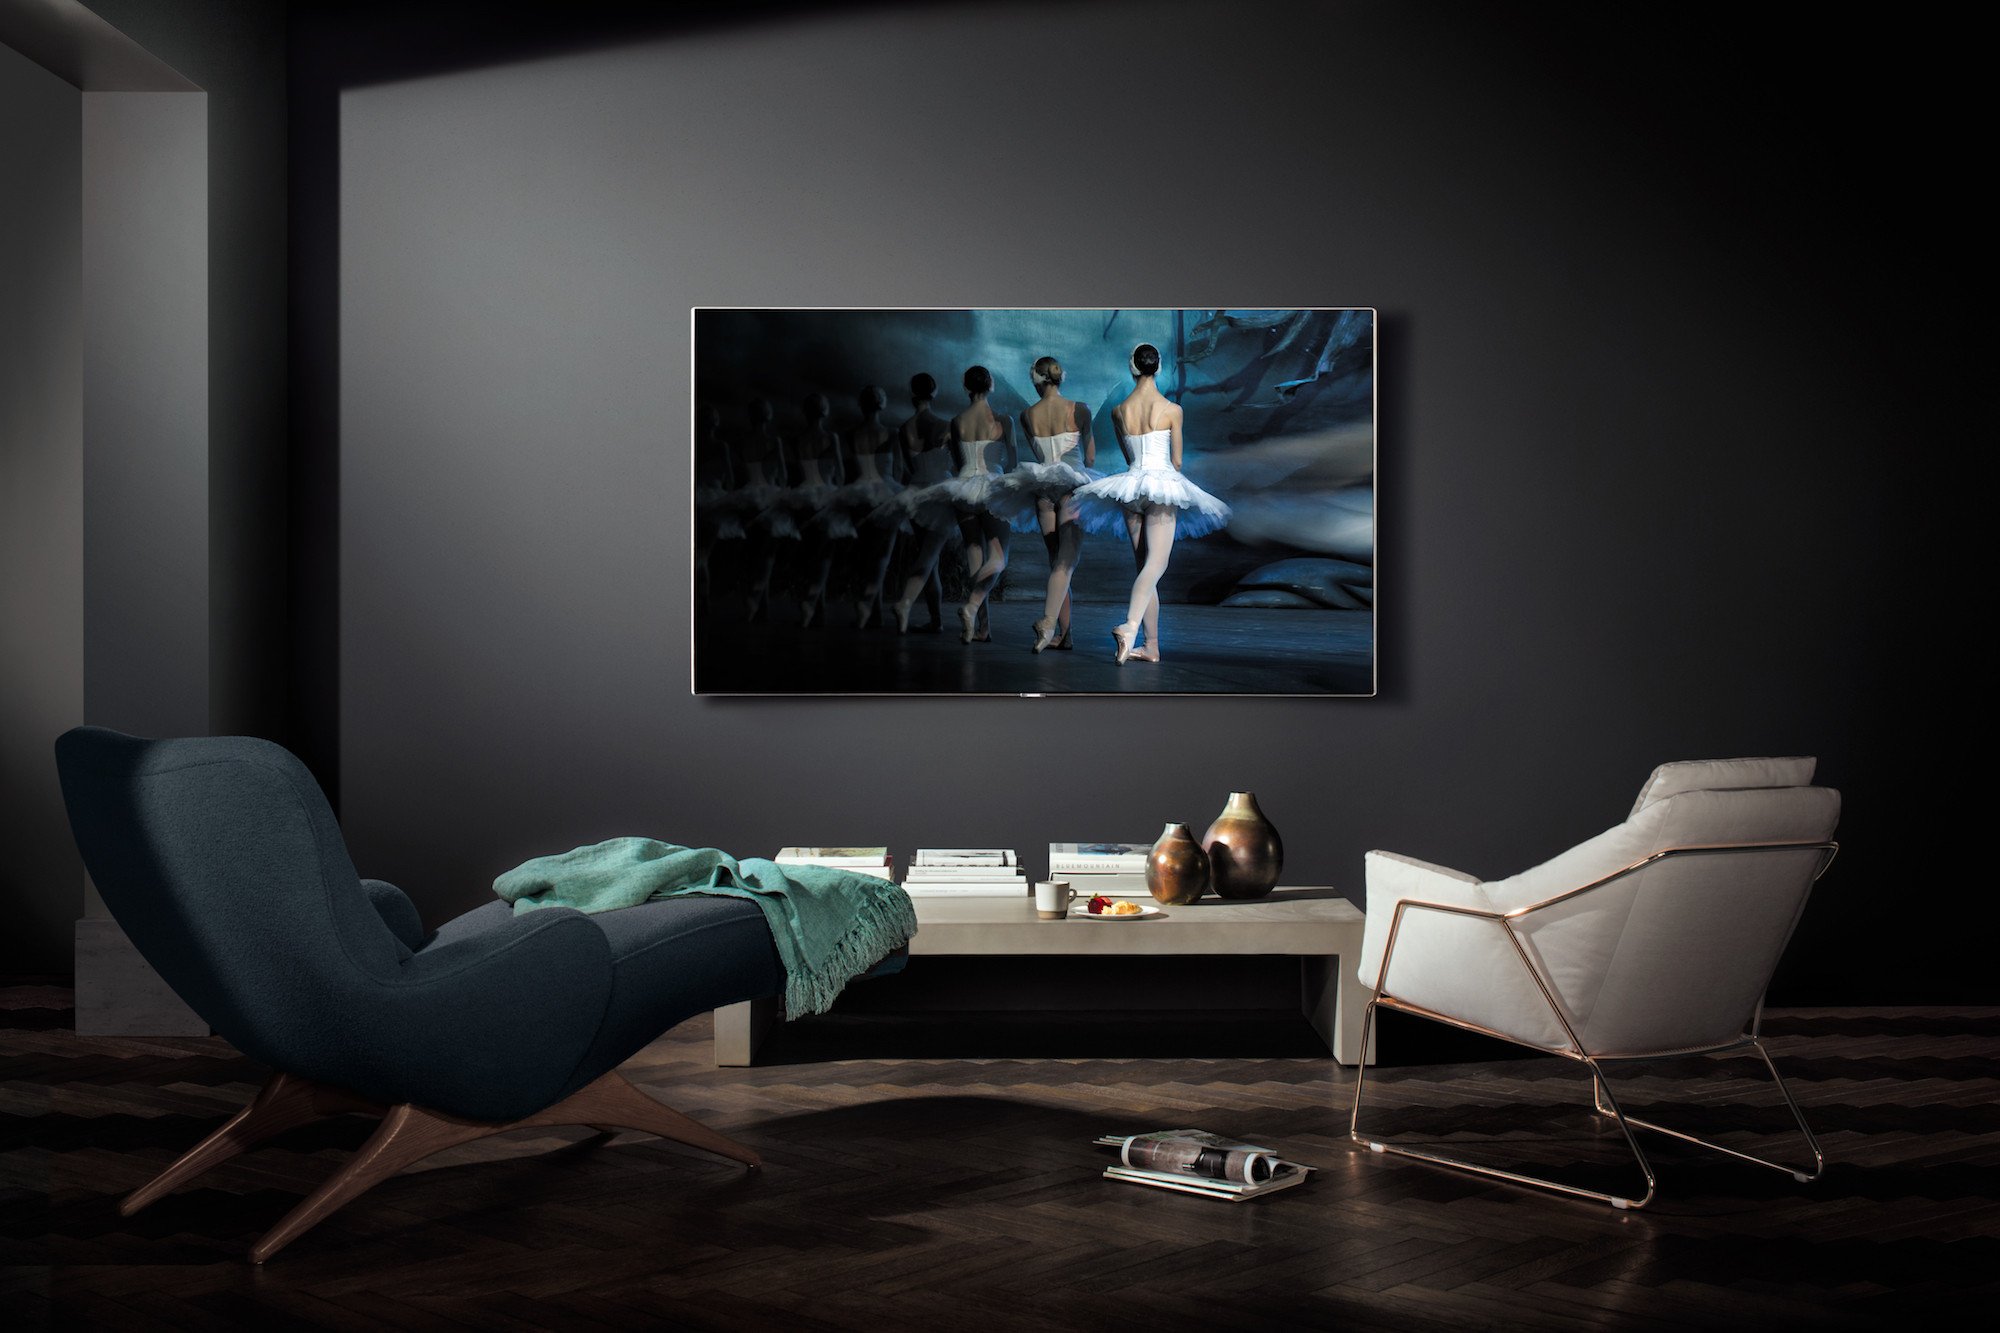 Телевизор в 5 часов. Телевизор QLED Samsung qe65q8cam 65" (2017). Телевизор Samsung QLED на стене. Телевизор самсунг 65 дюймов.